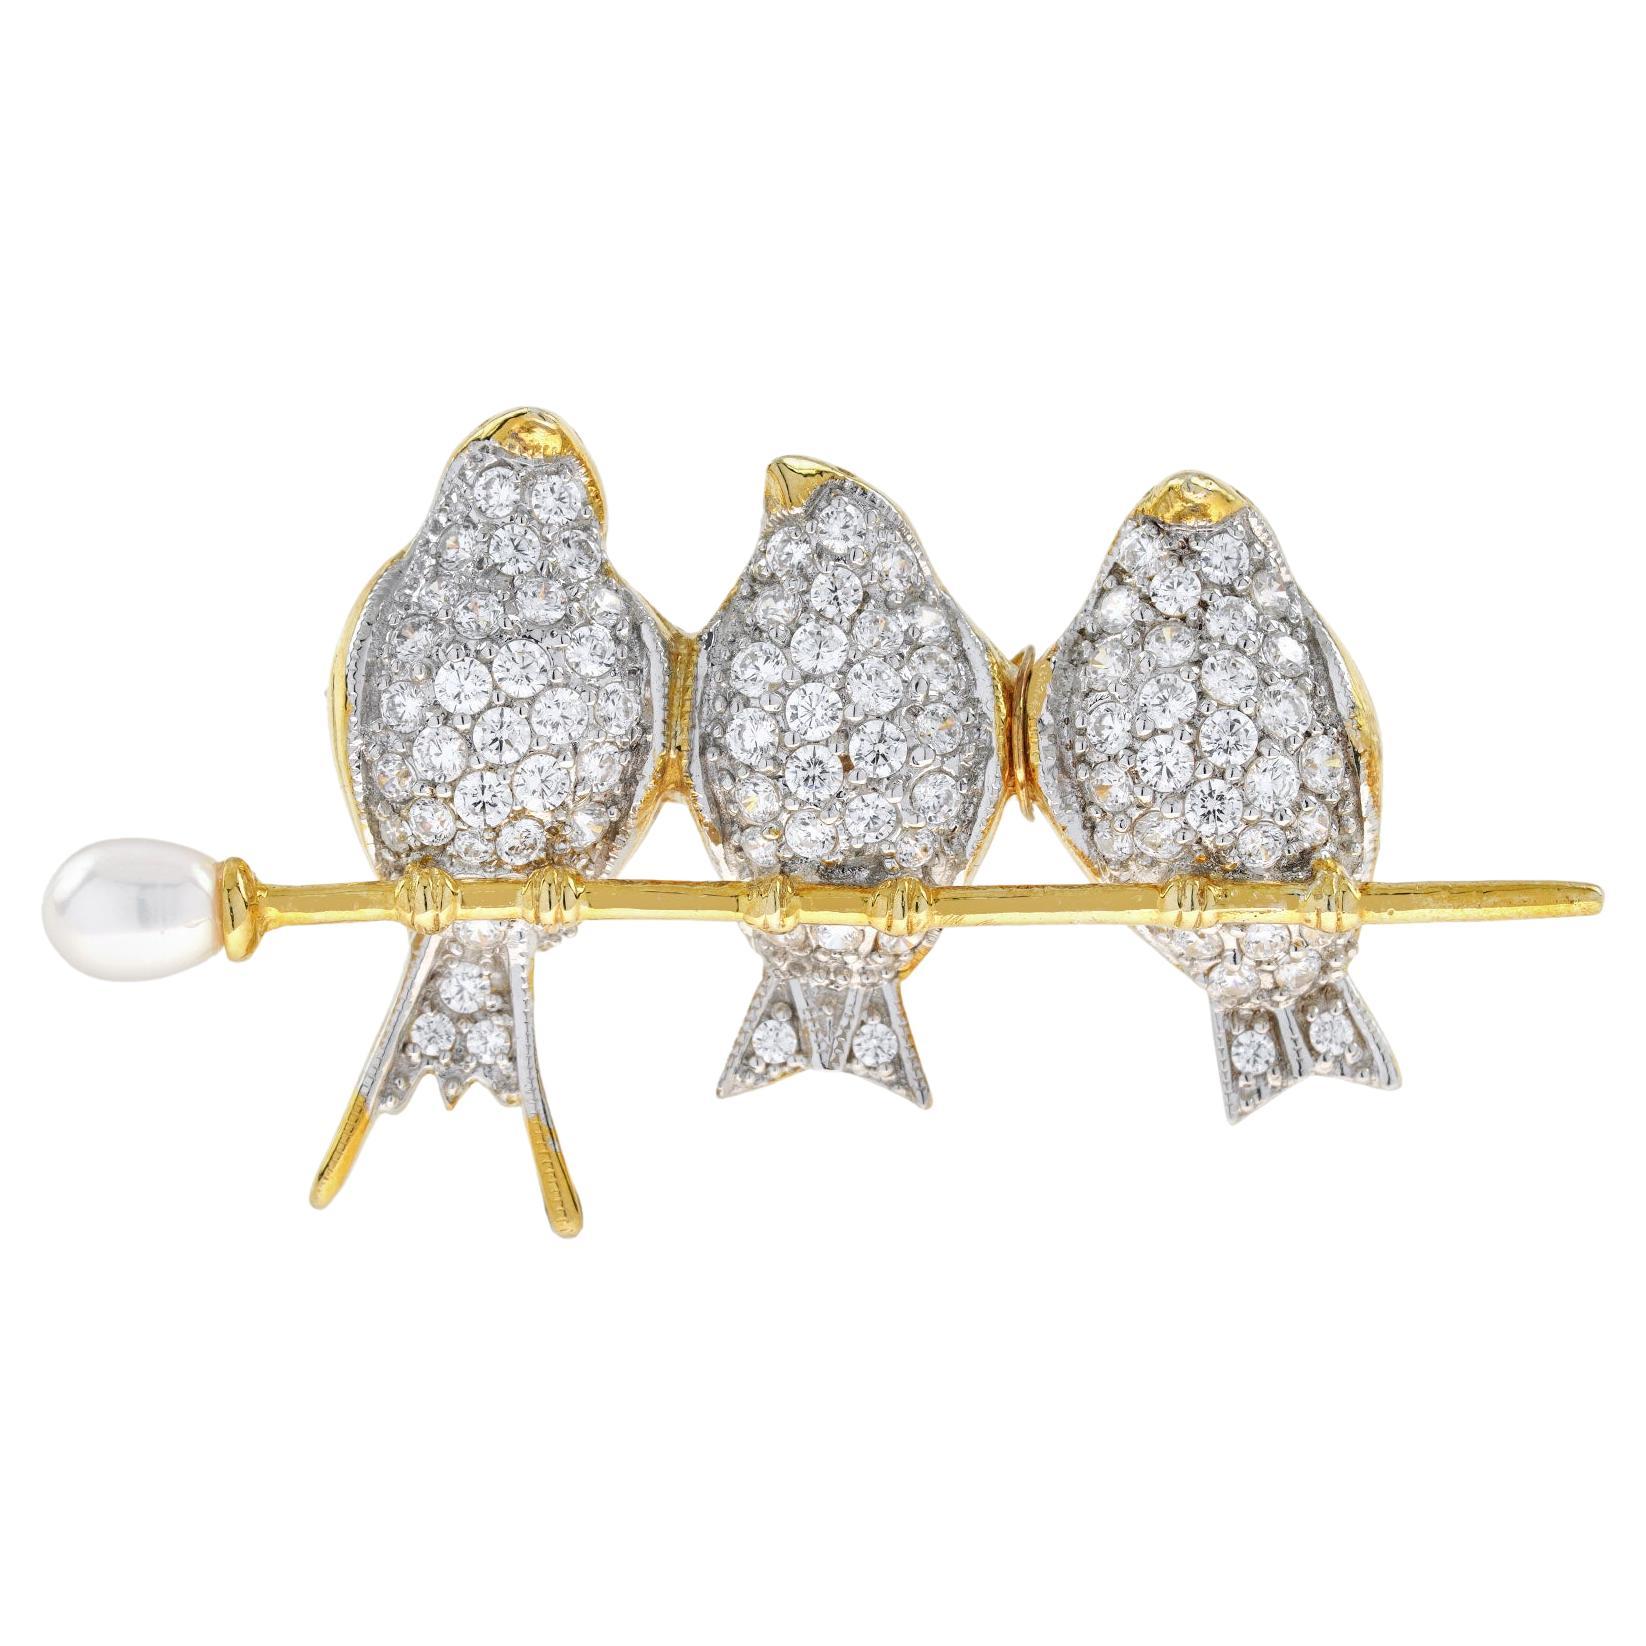 Diamant Vögel auf einem Perlen Branch Vintage-Stil Brosche in 18K Zwei-Ton-Gold